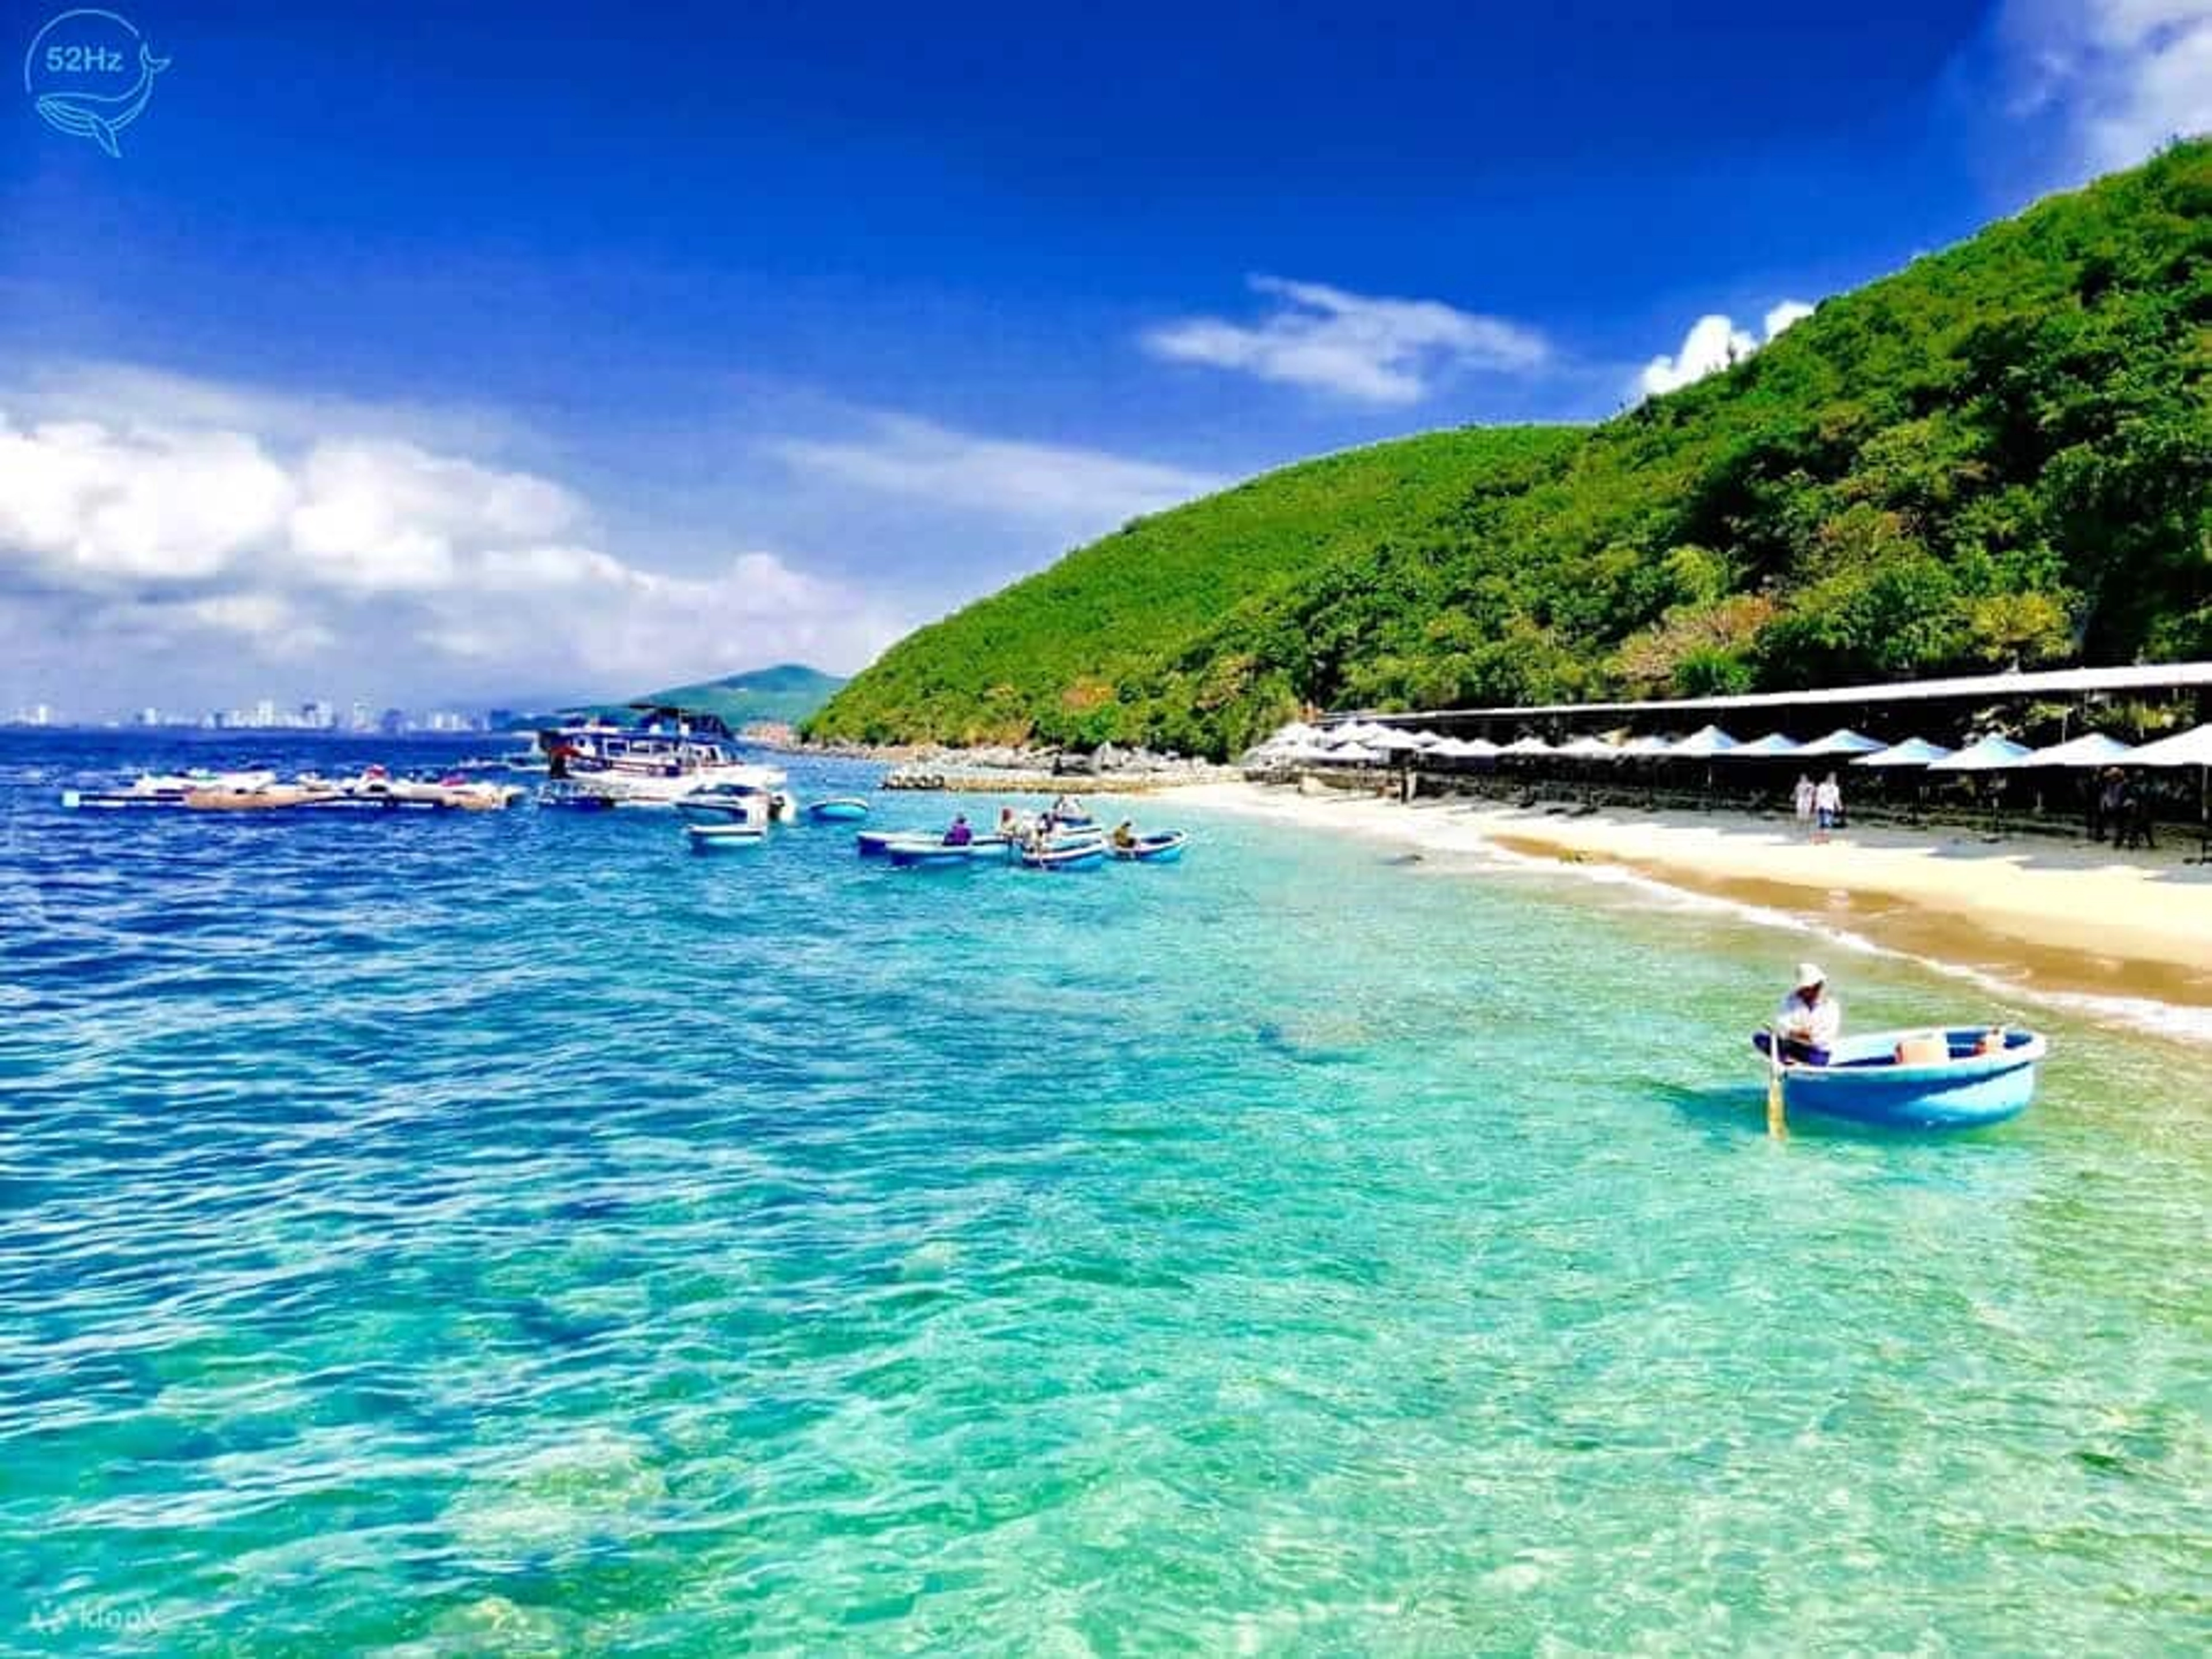 Khám phá vẻ đẹp hoang sơ của Đảo Bình Hưng - Thiên đường giữa lòng biển Travel